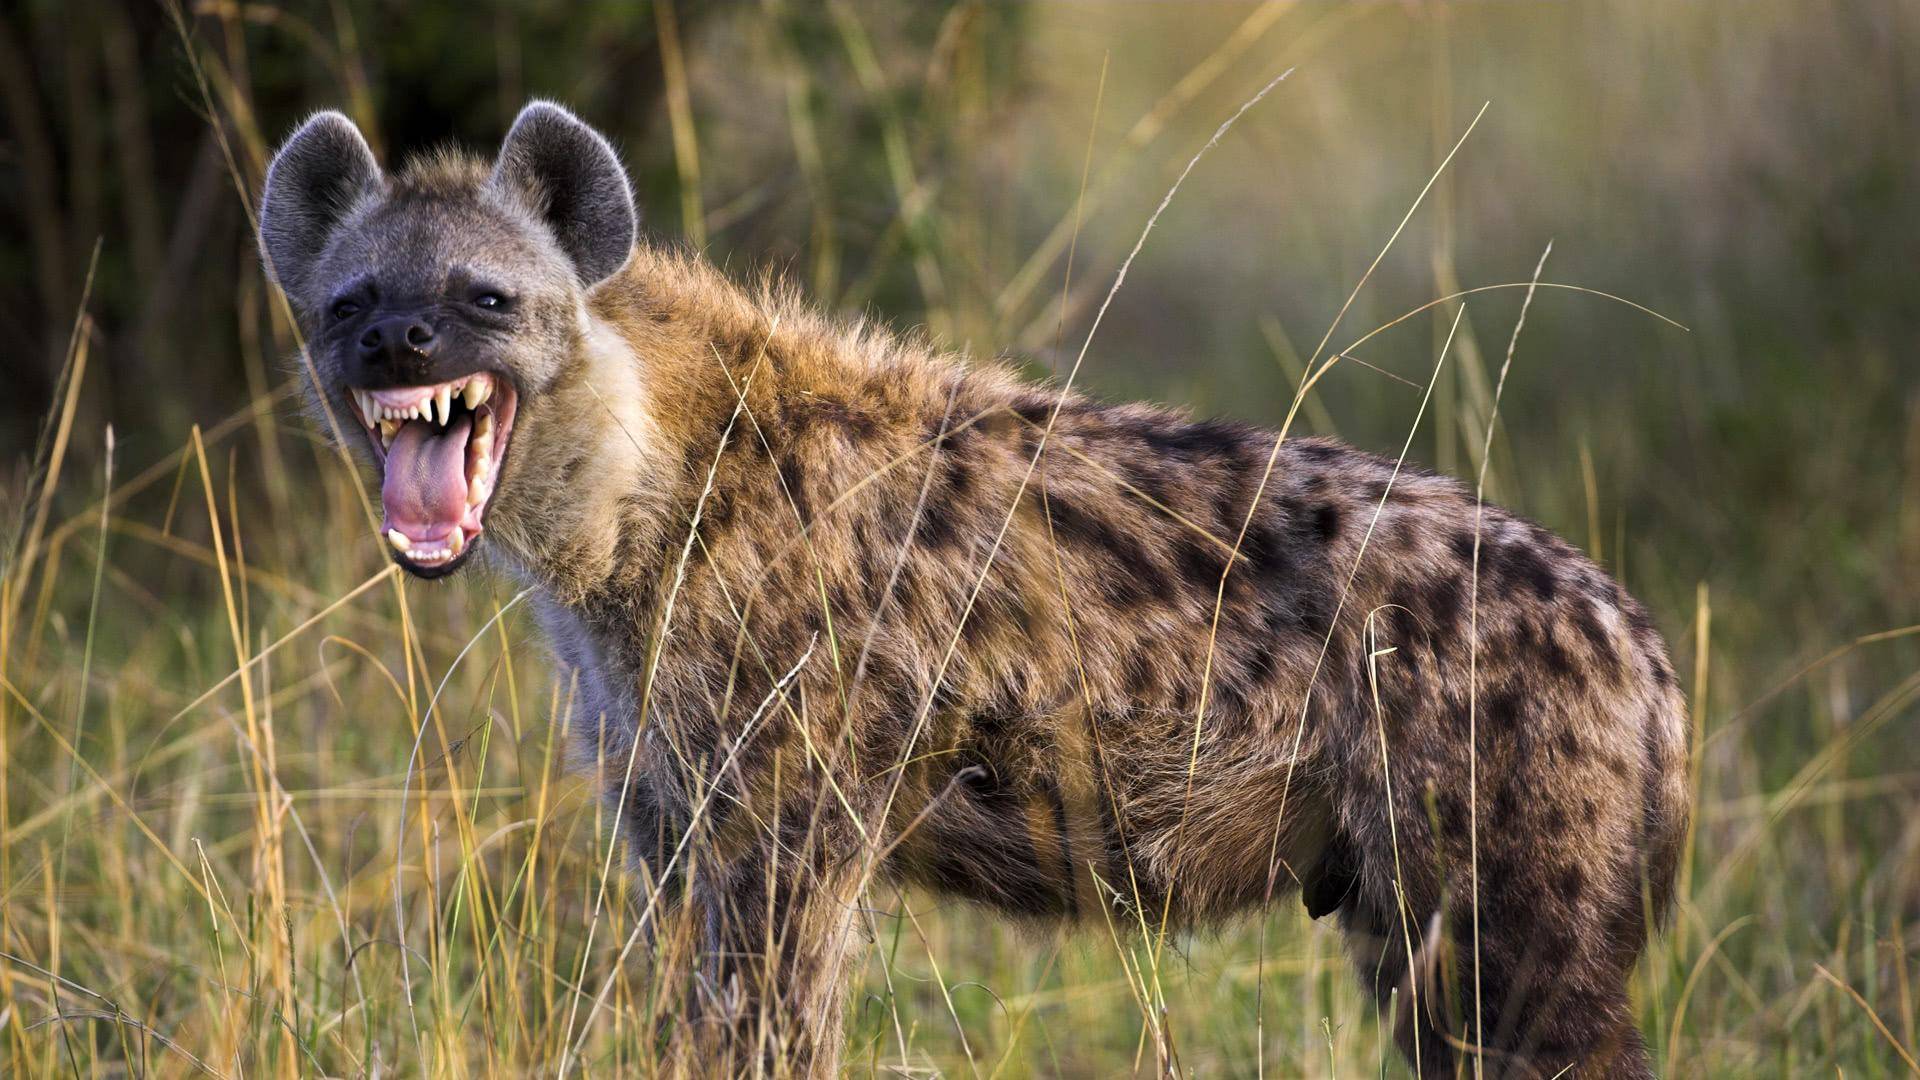 斑鬣狗狩猎到底有多聪明能单独狩猎吗整个狩猎过程都是计谋